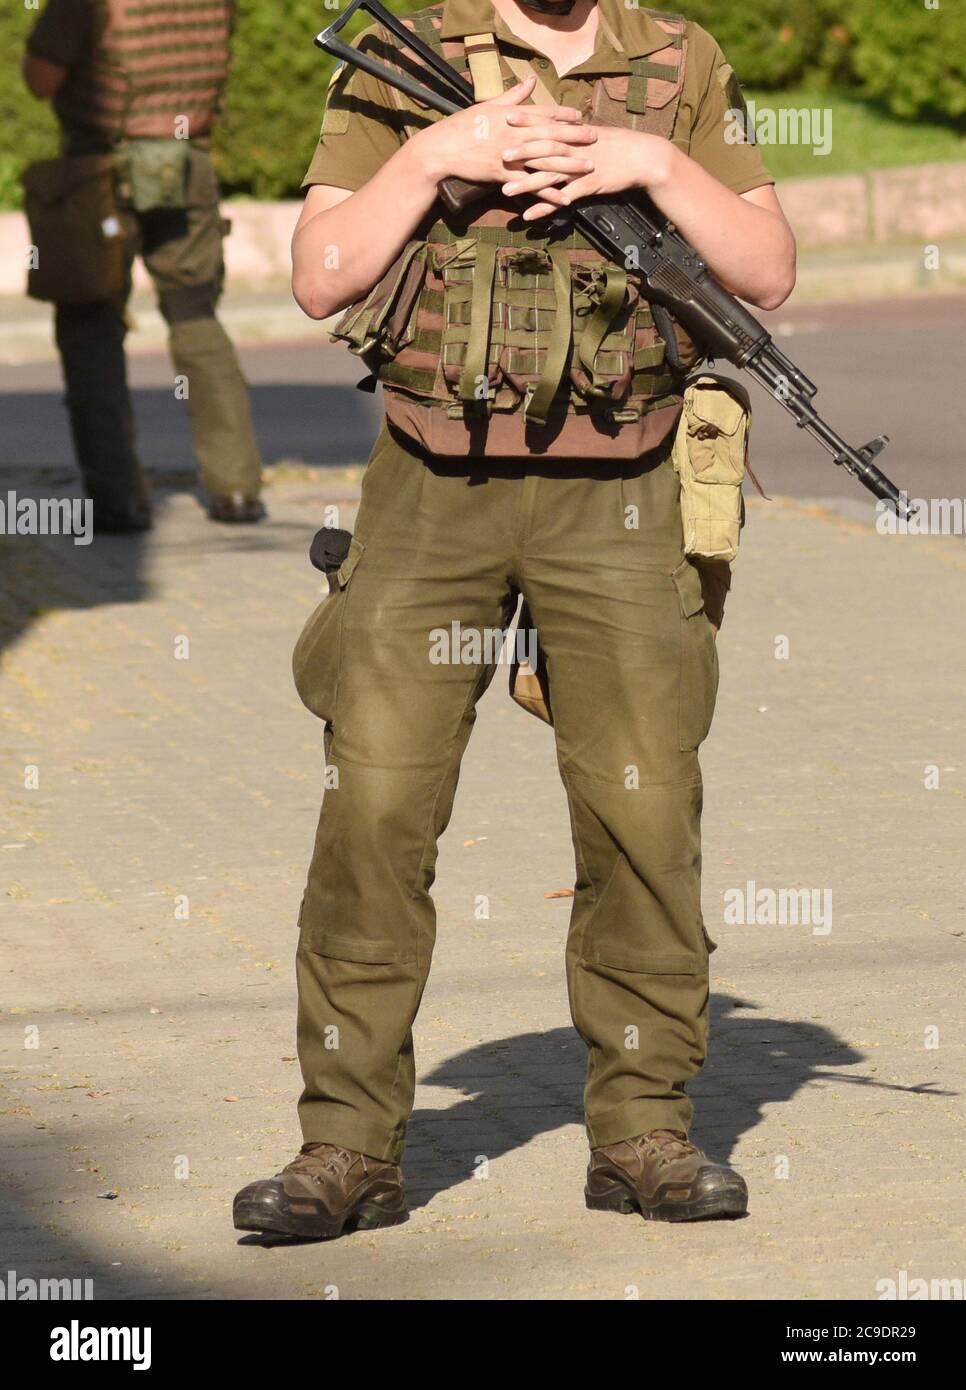 Soldat militaire avec arme. Forces armées, troupes, armée. Soldat avec fusil d'assaut Kalashnikov (AK-74) Banque D'Images